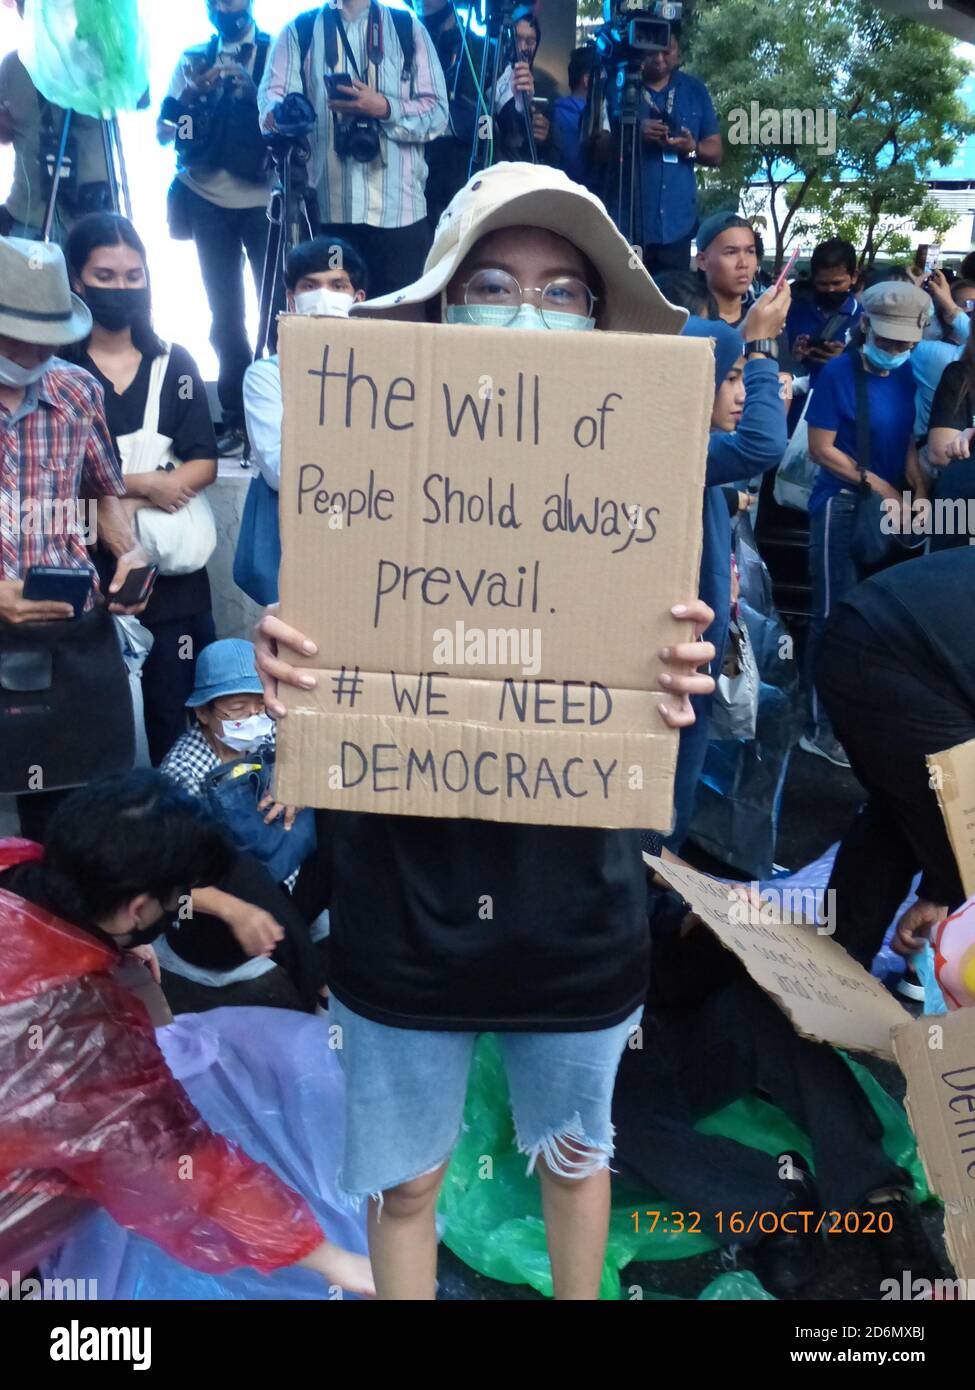 Des signes anglais tenus par des manifestants lors d'une manifestation anti-gouvernementale par des jeunes à l'intersection de Pathumwan, Bangkok, Thaïlande, le 16 octobre 2020. Banque D'Images